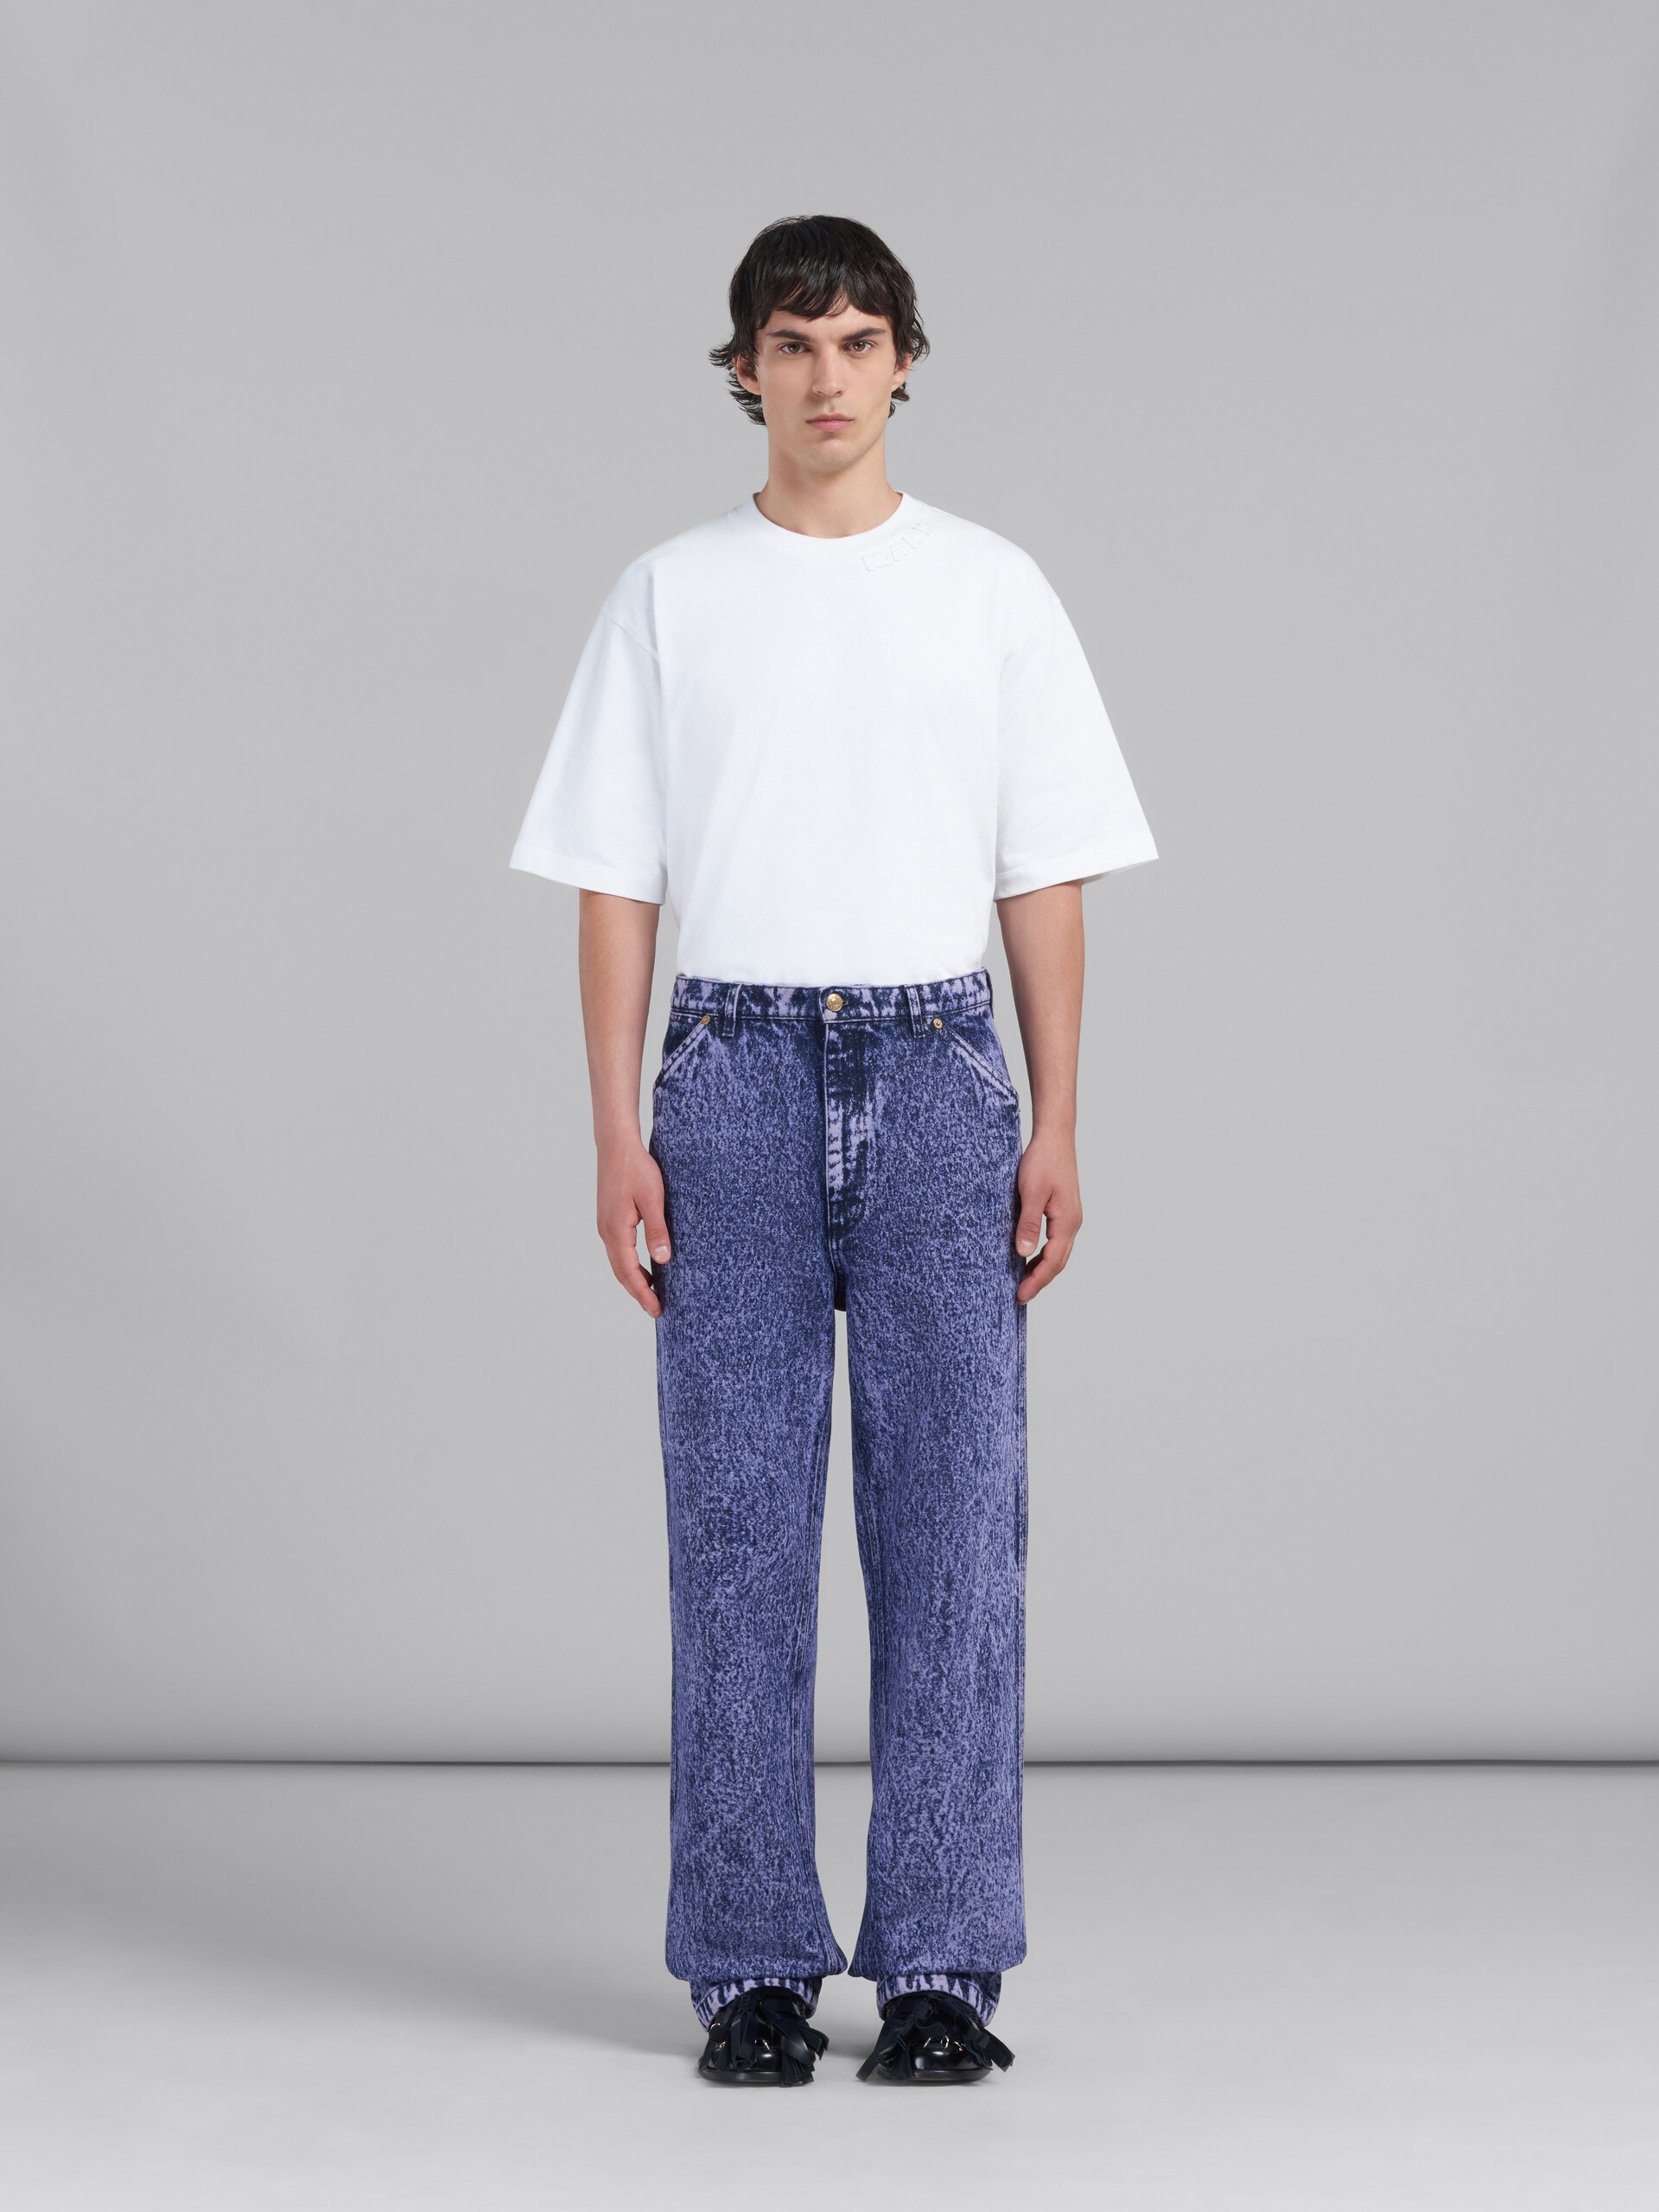 Pantalón de denim azul efecto mármol - Pantalones - Image 2